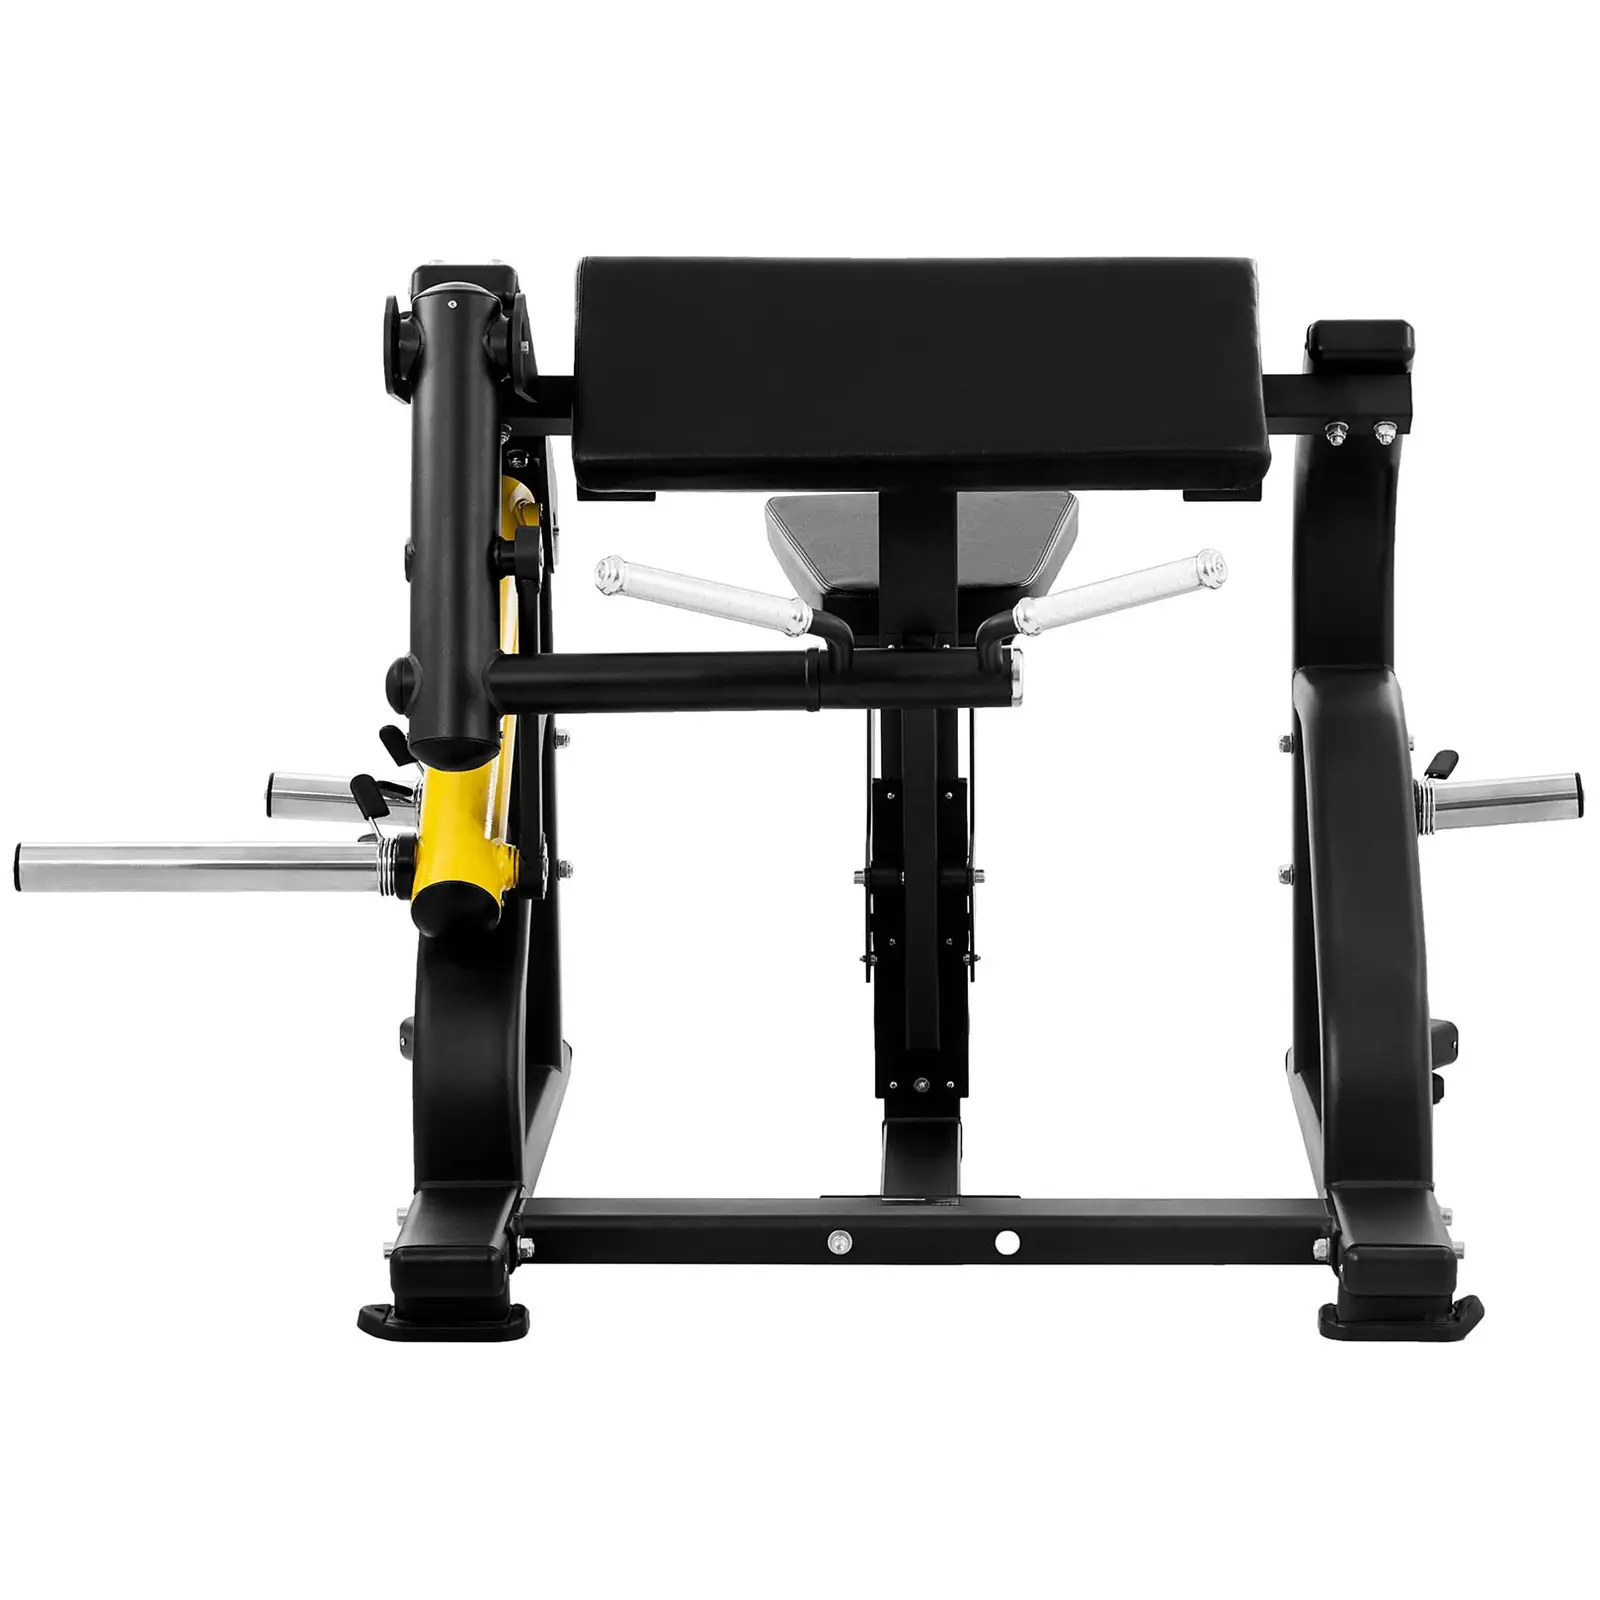 Stroj na procvičování bicepsů - 135 kg